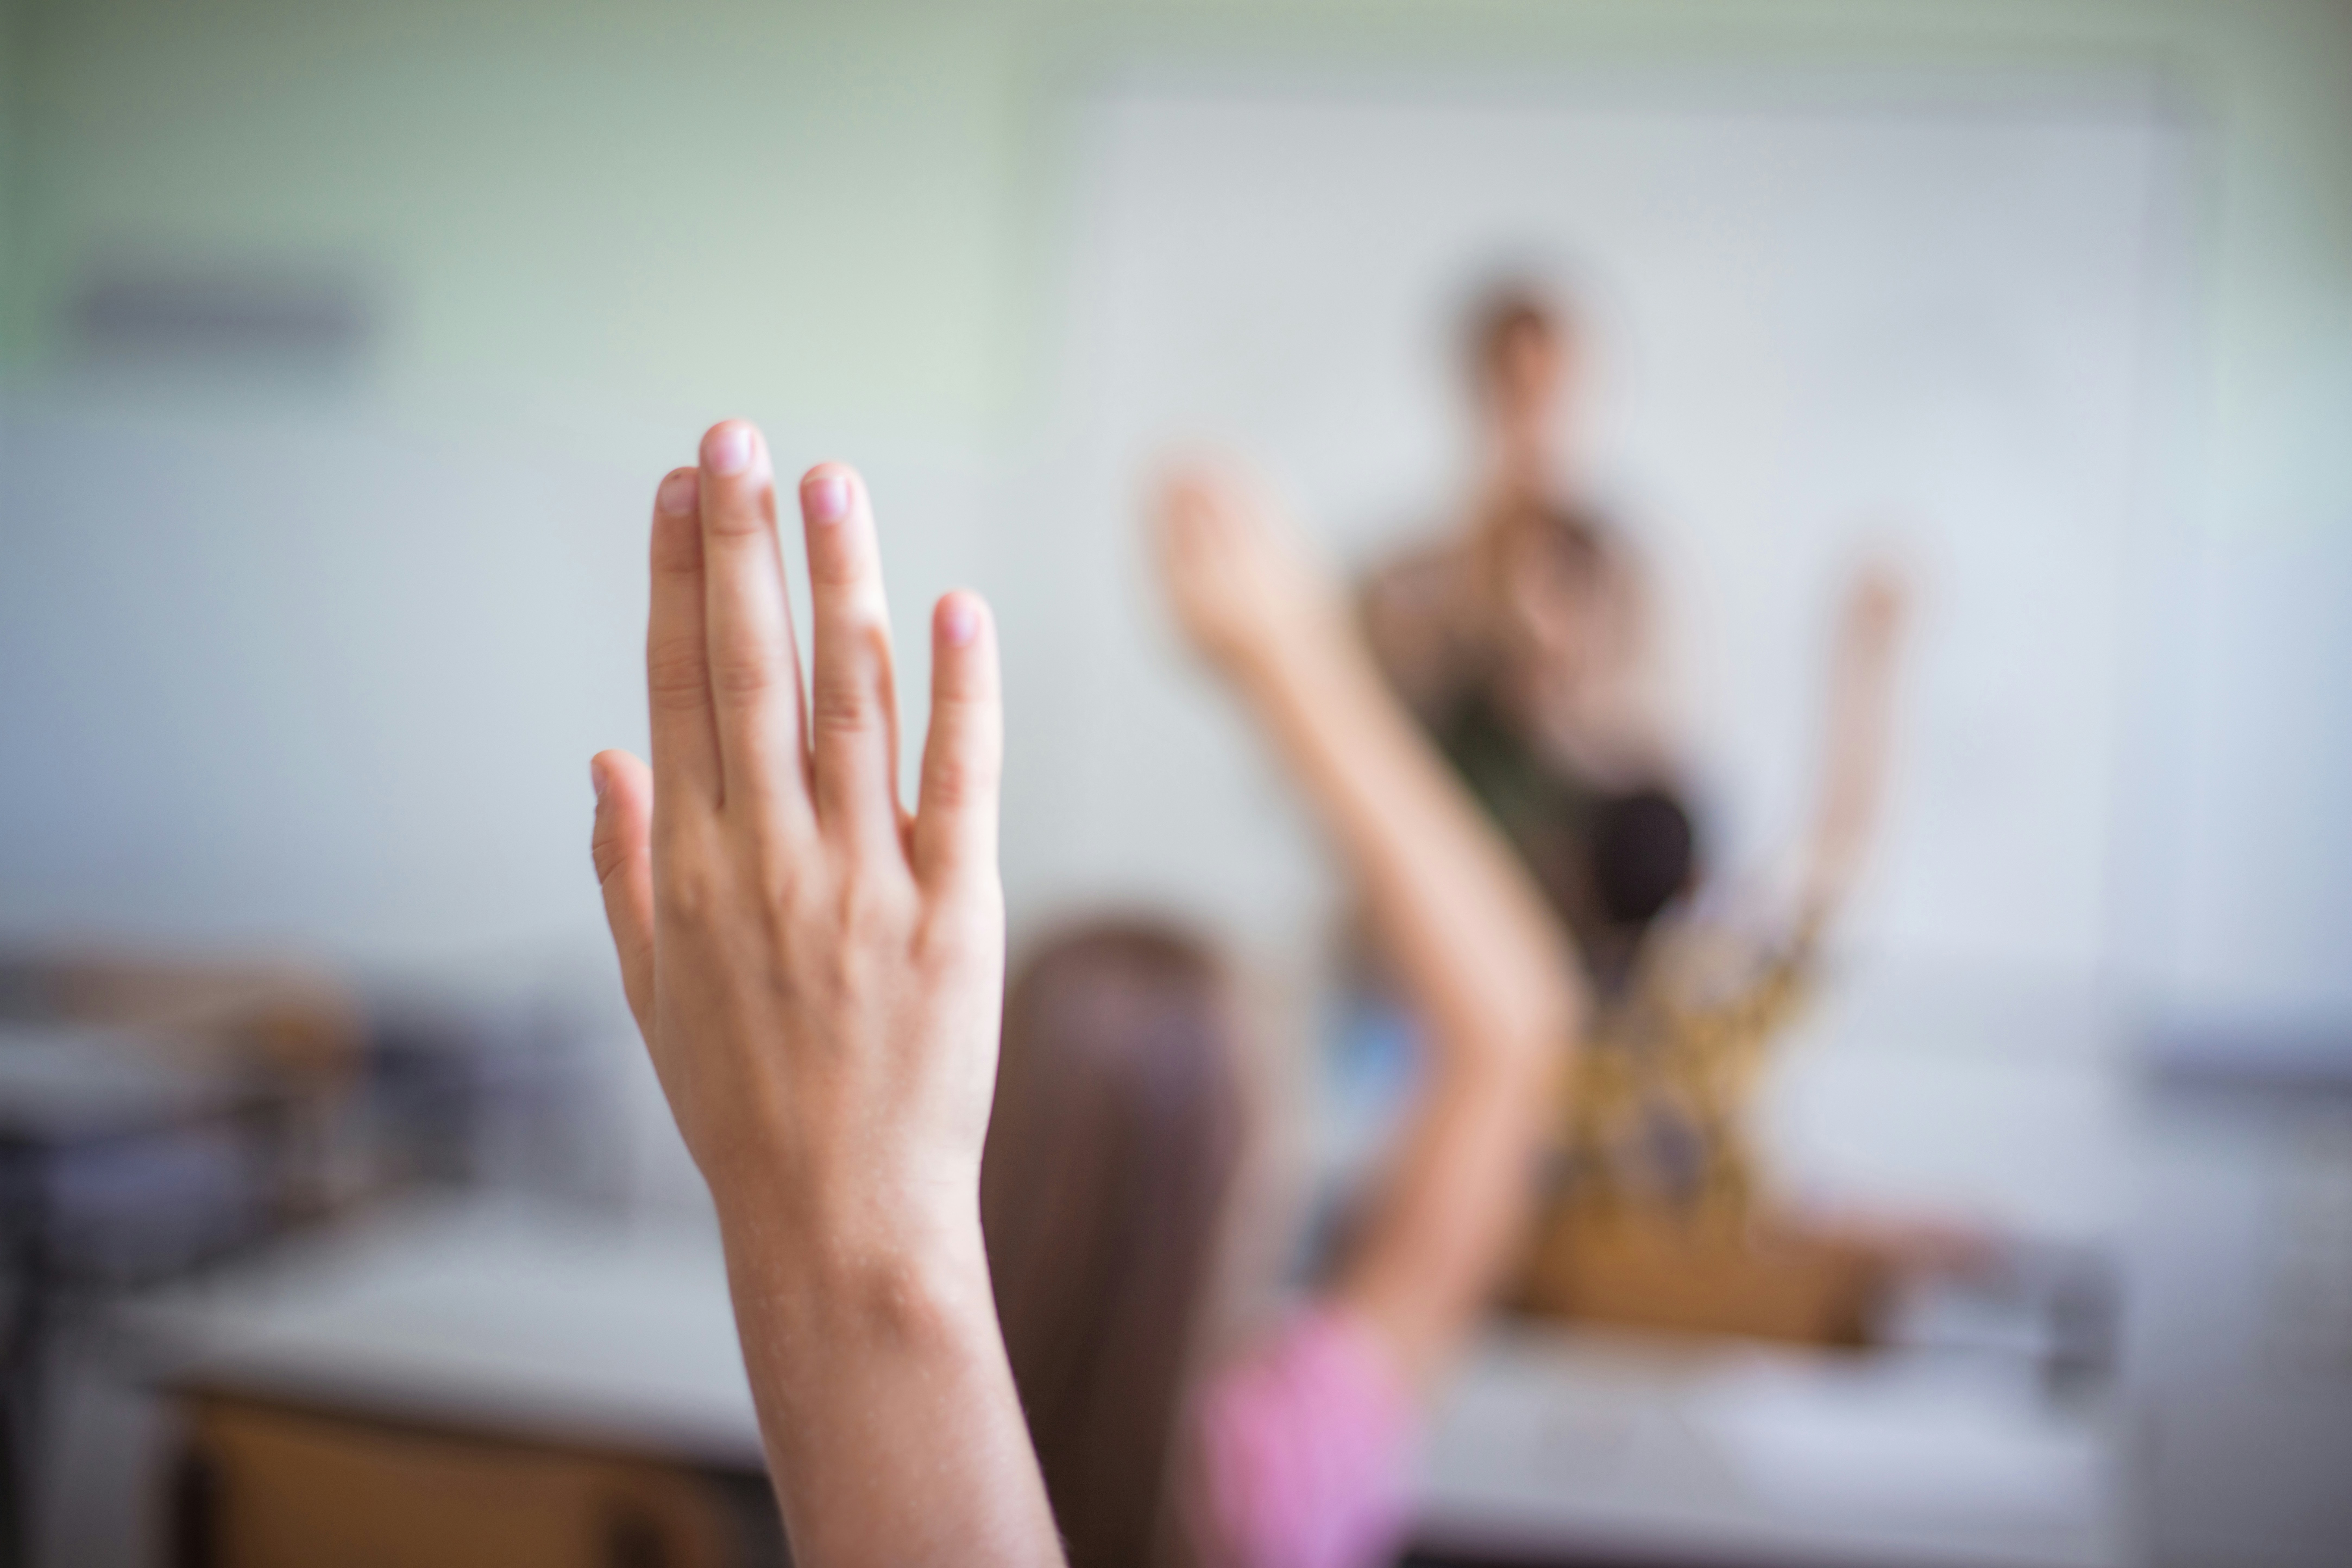 Kid raising hand in class